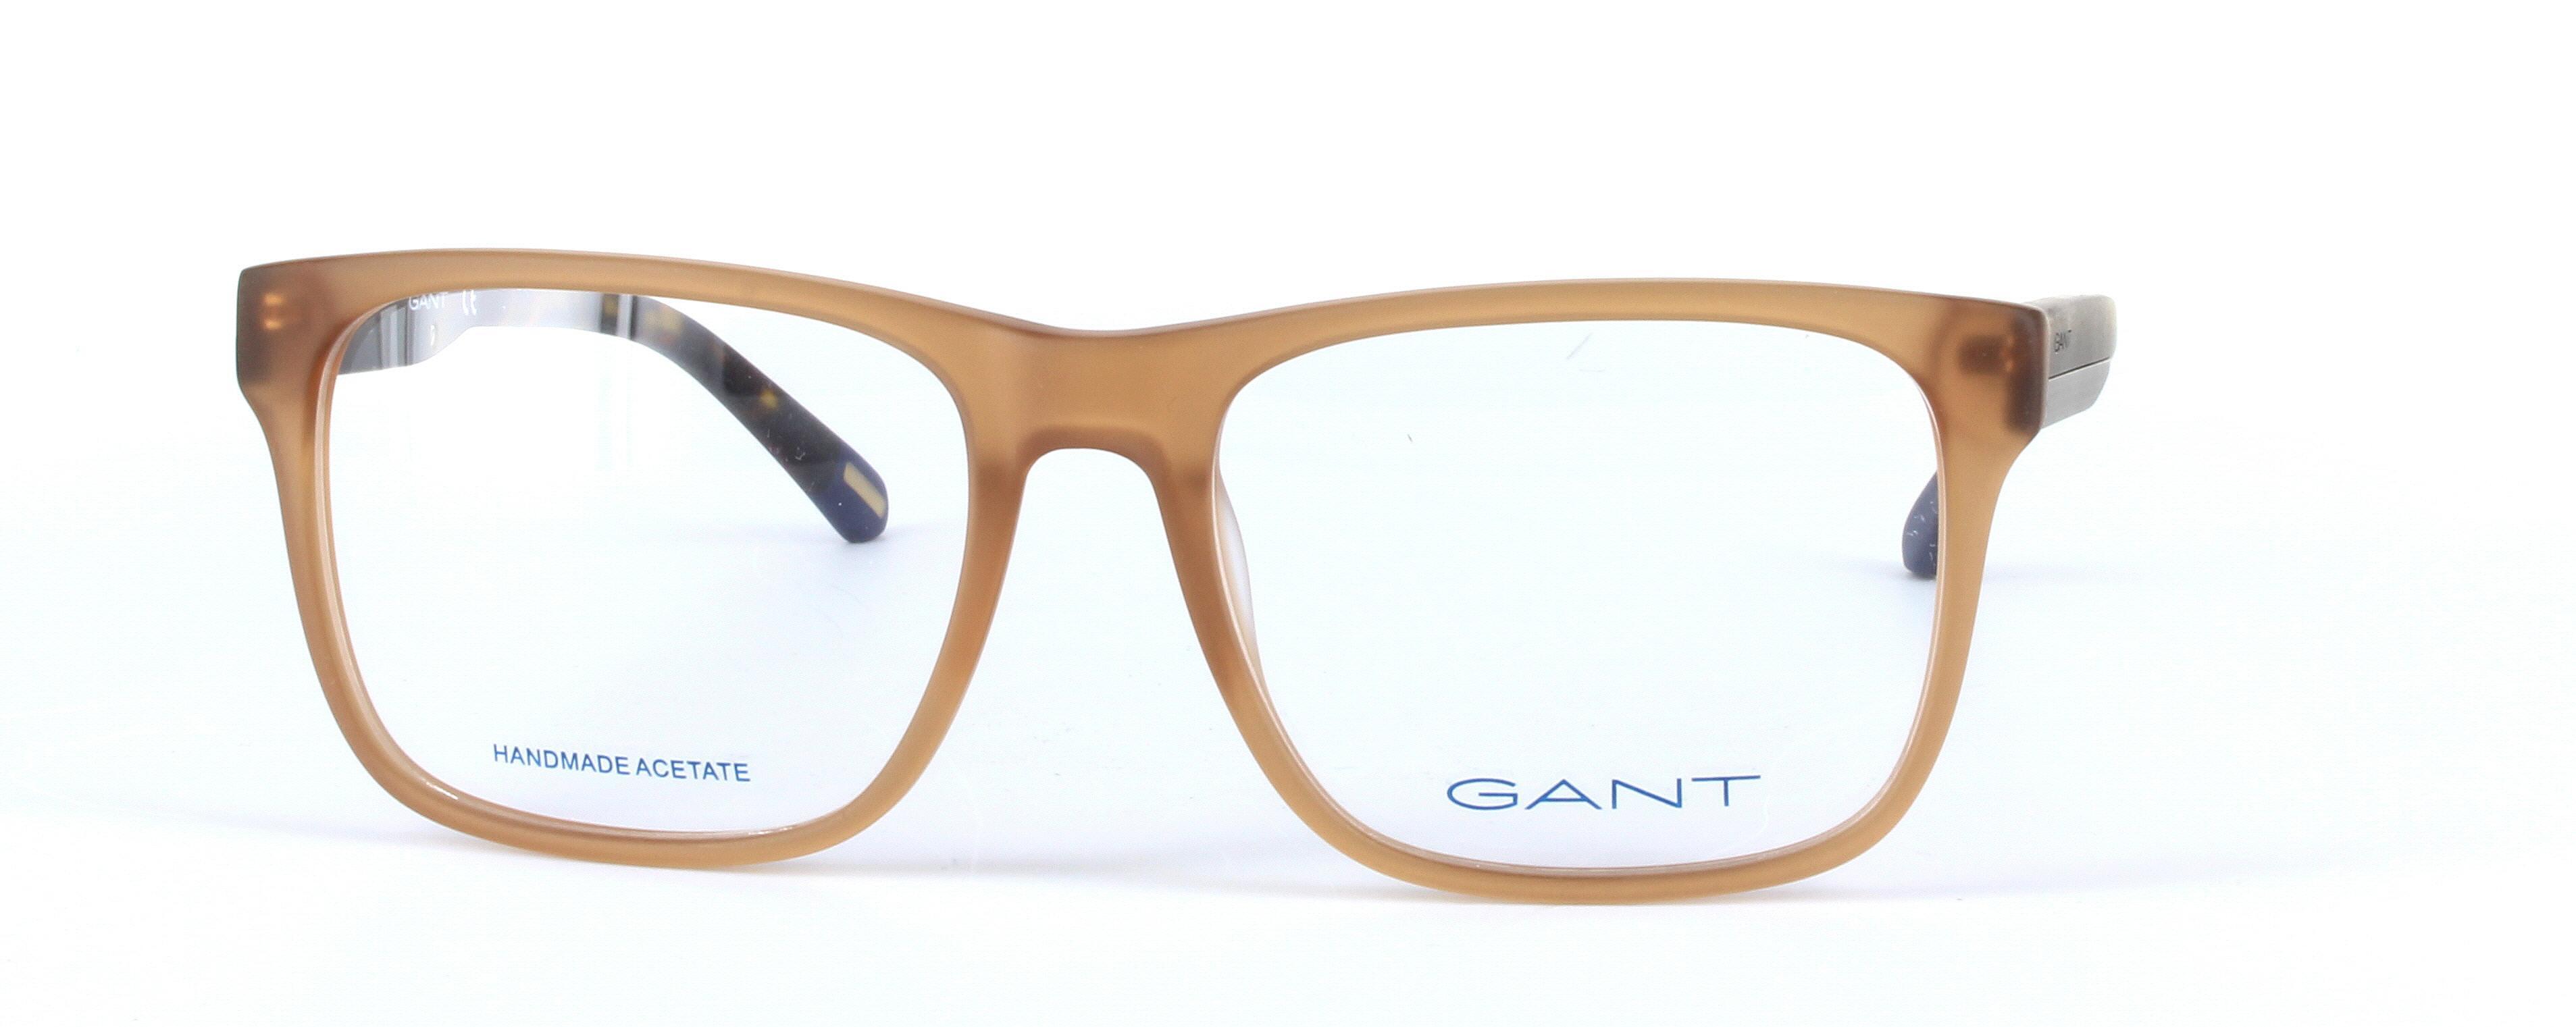 GANT (GA3122-046) Brown Full Rim Oval Rectangular Acetate Glasses - Image View 5